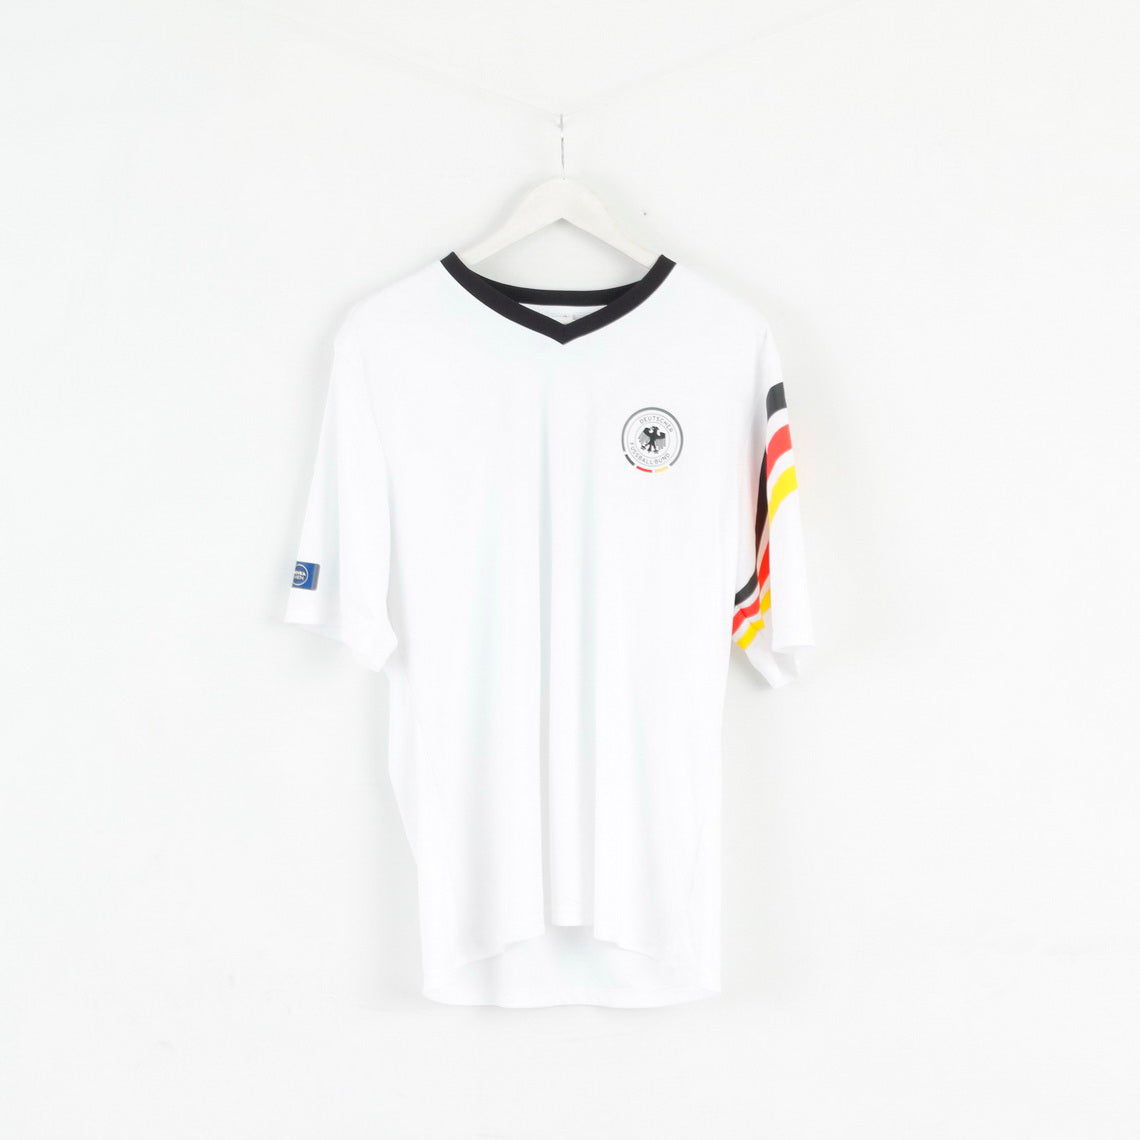 Adidas Deutscher Fussball Bund Mens XL Shirt Blanc Jogis Joker 14 fourrure Rio Football Jersey